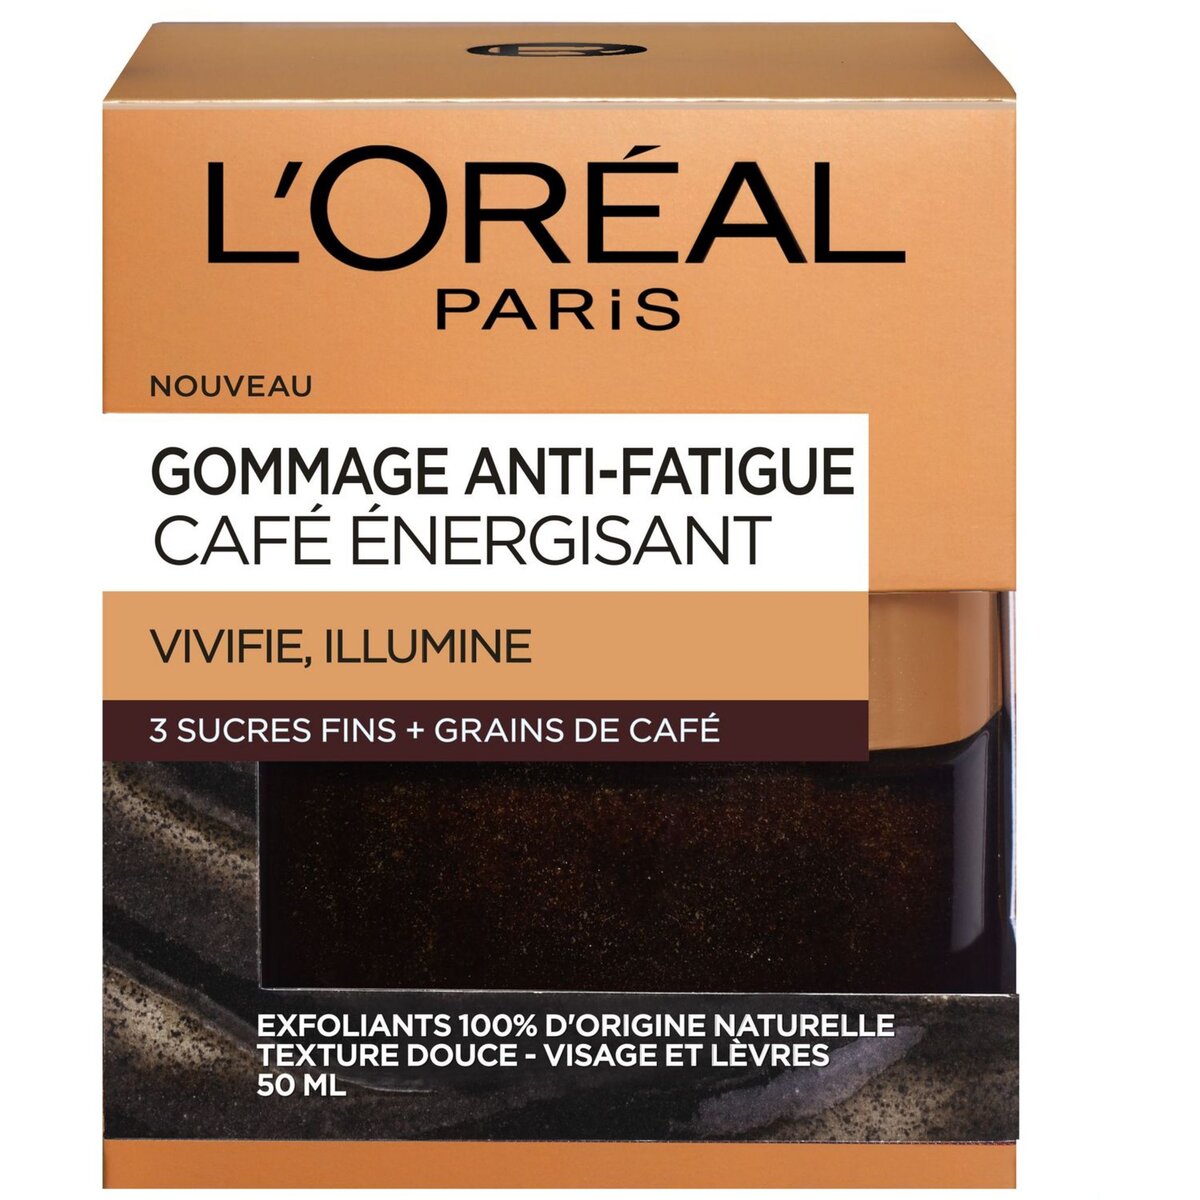 L'OREAL Gommage anti-fatigue aux 3 sucres fins + grains de café 50ml